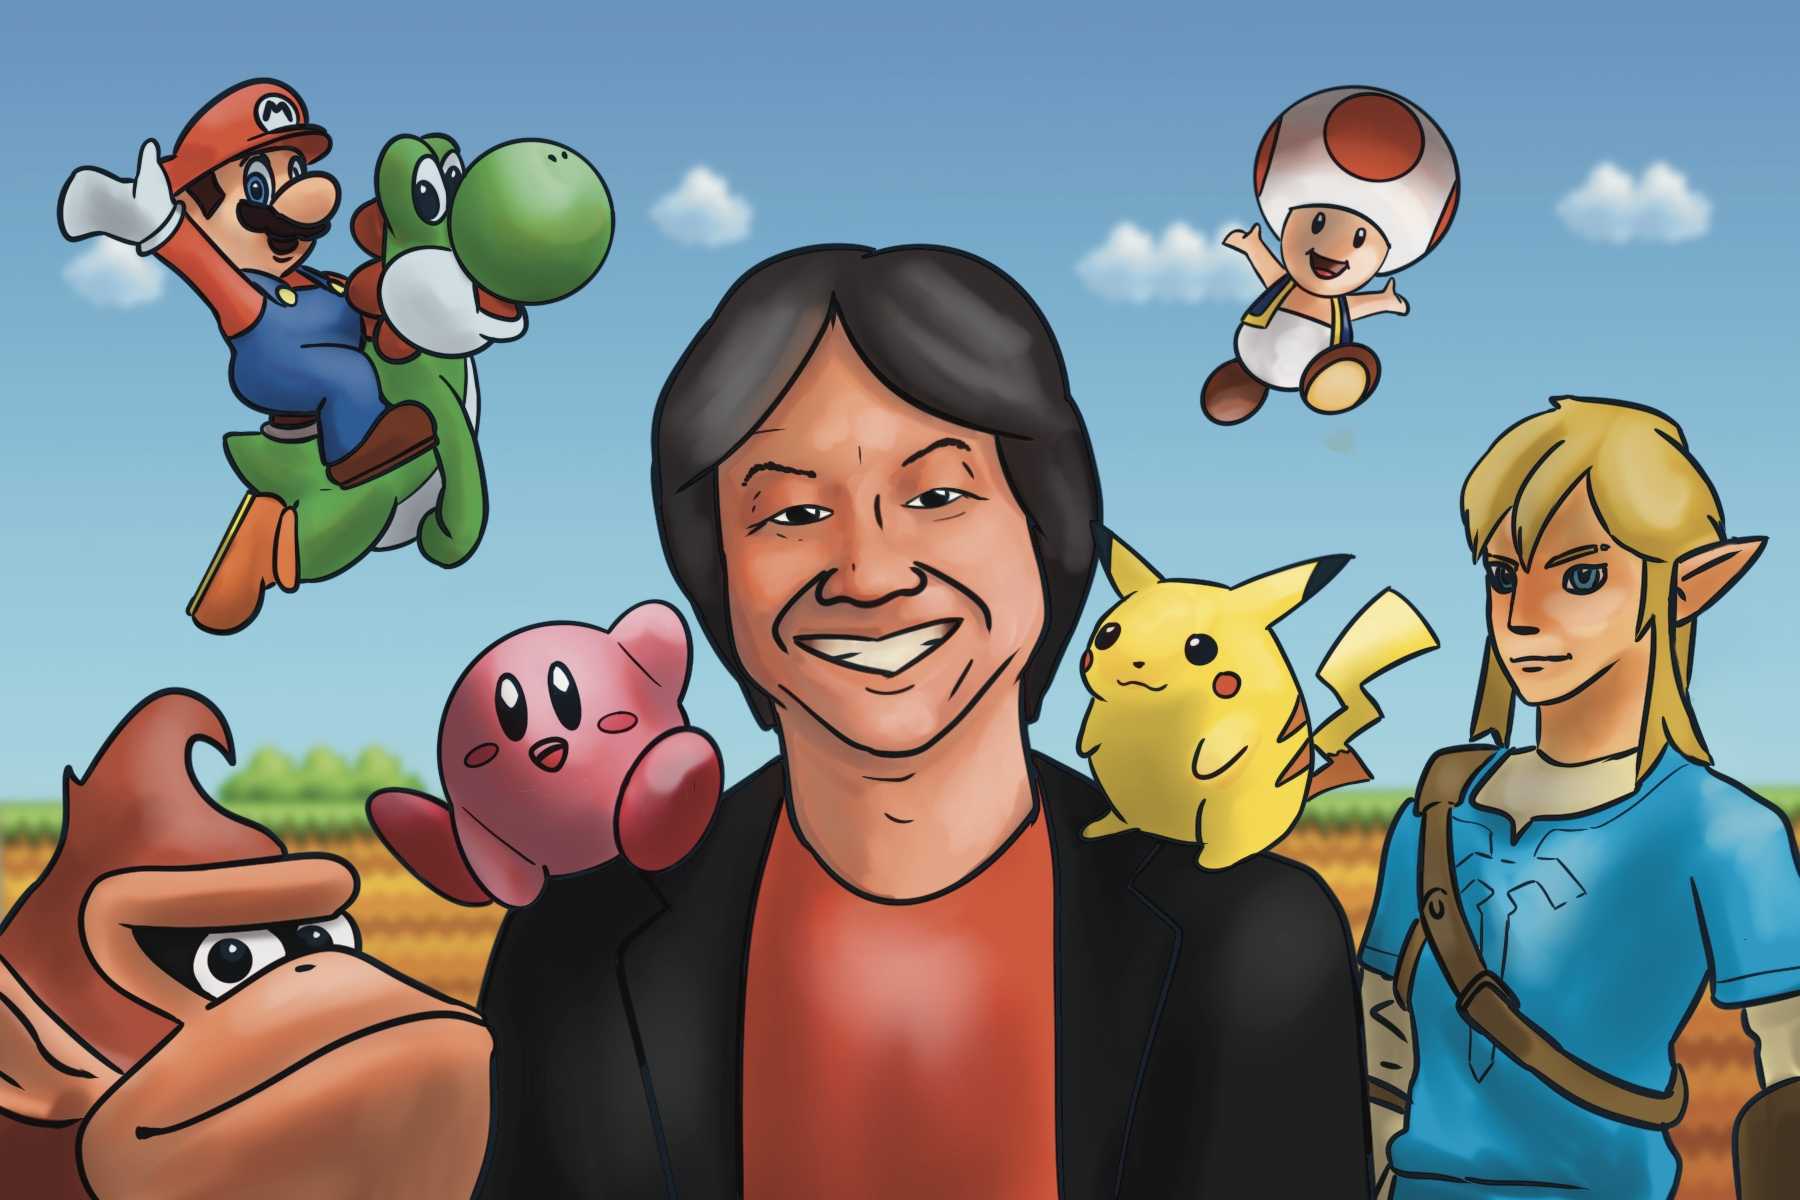 Shigeru Miyamoto says the Mario Movie has surpassed his expectations